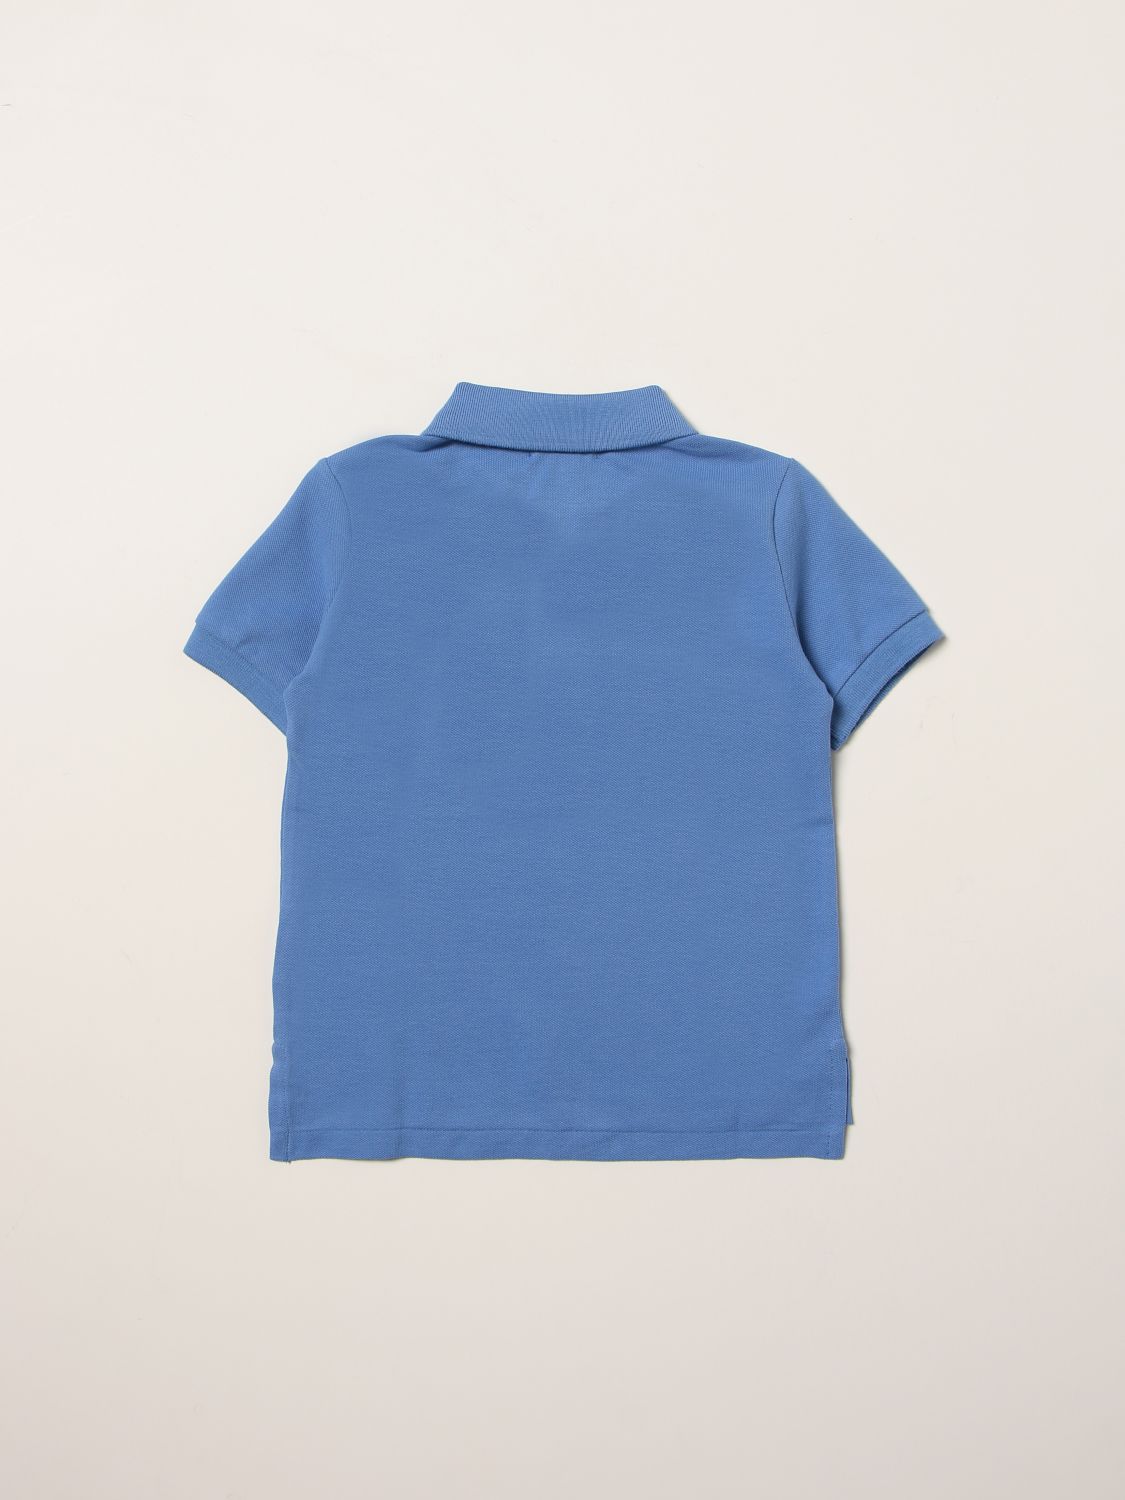 ポロシャツ ポロラルフローレン: ポロシャツ Polo Ralph Lauren 男の子 ブルー 2